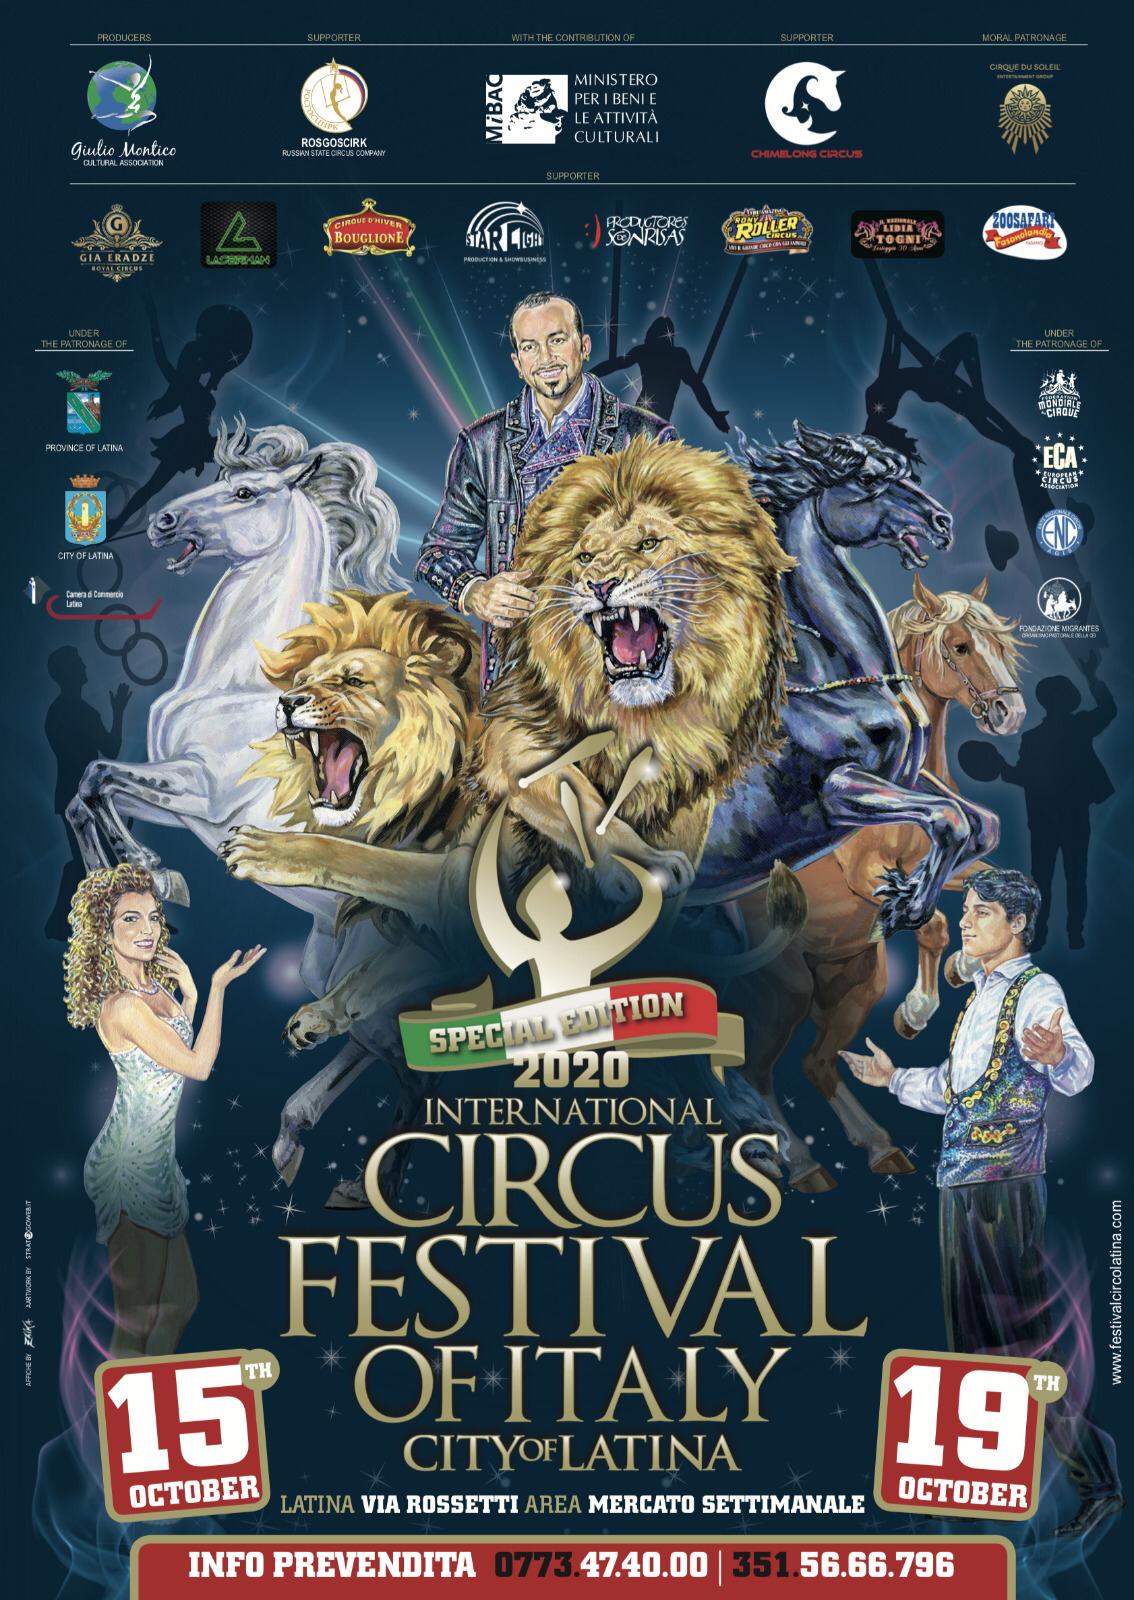 Tutto pronto per la 21ᵃ ed. dell’International Circus Festival of Italy